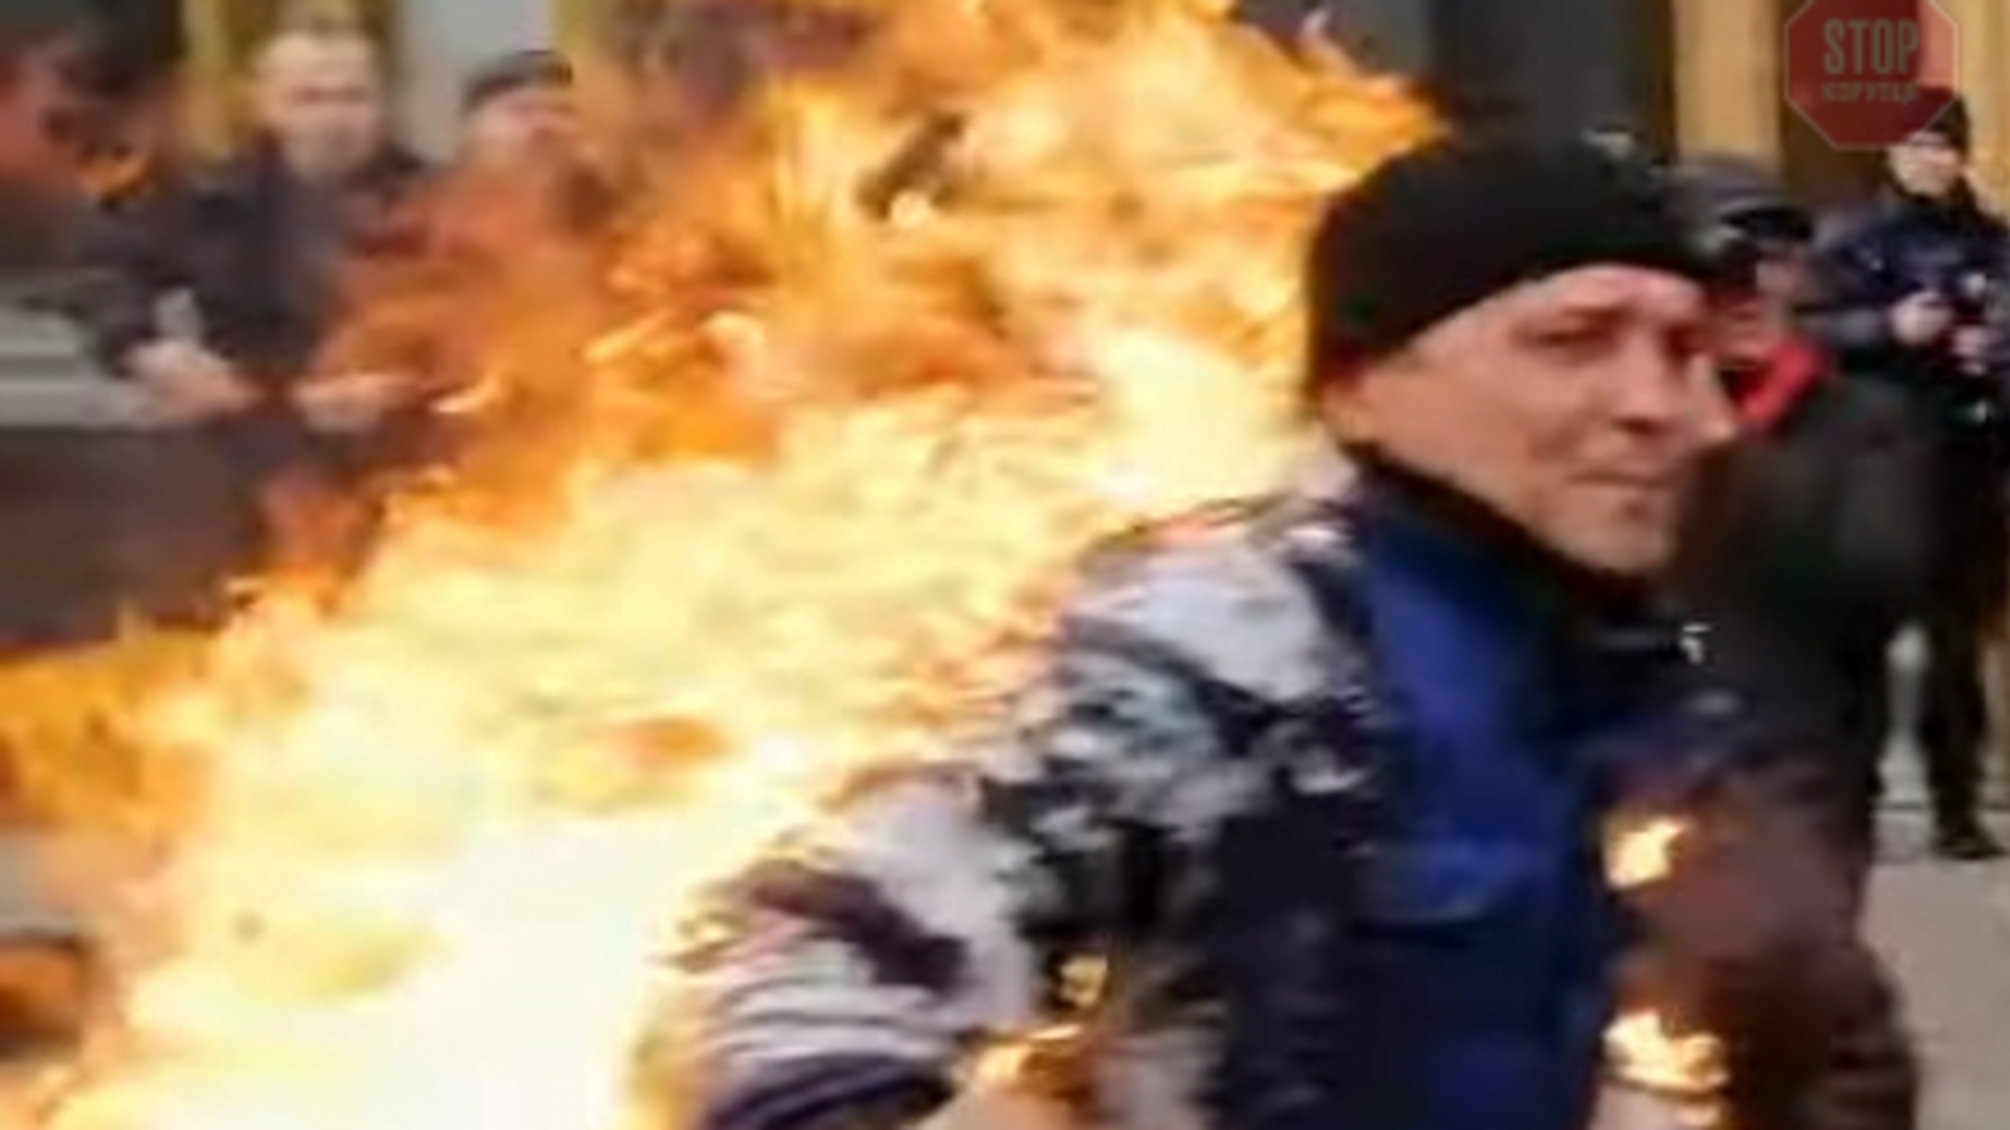 Стає гарячіше: у Києві на акції проти медреформи сталося самоспалення (фото, відео)